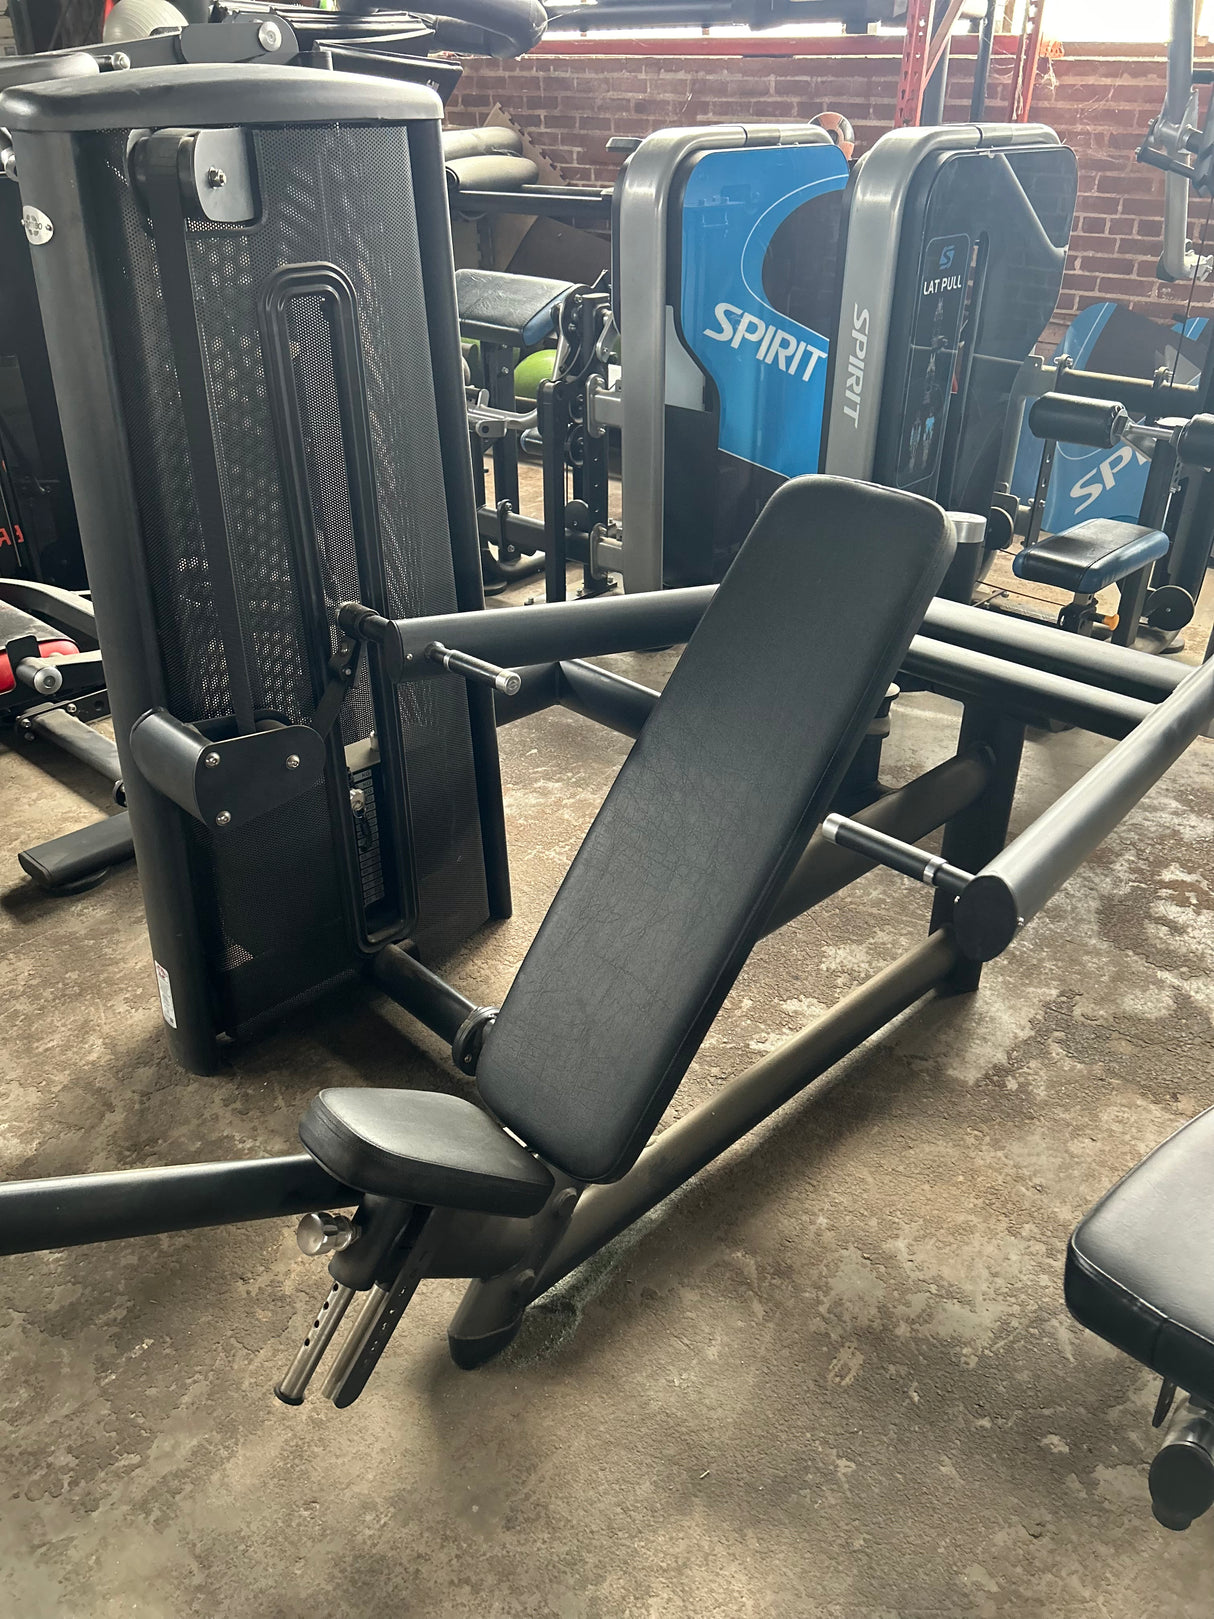 Gym 80 Shoulder Press Selectorized Demo Model - ExerciseUnlimited